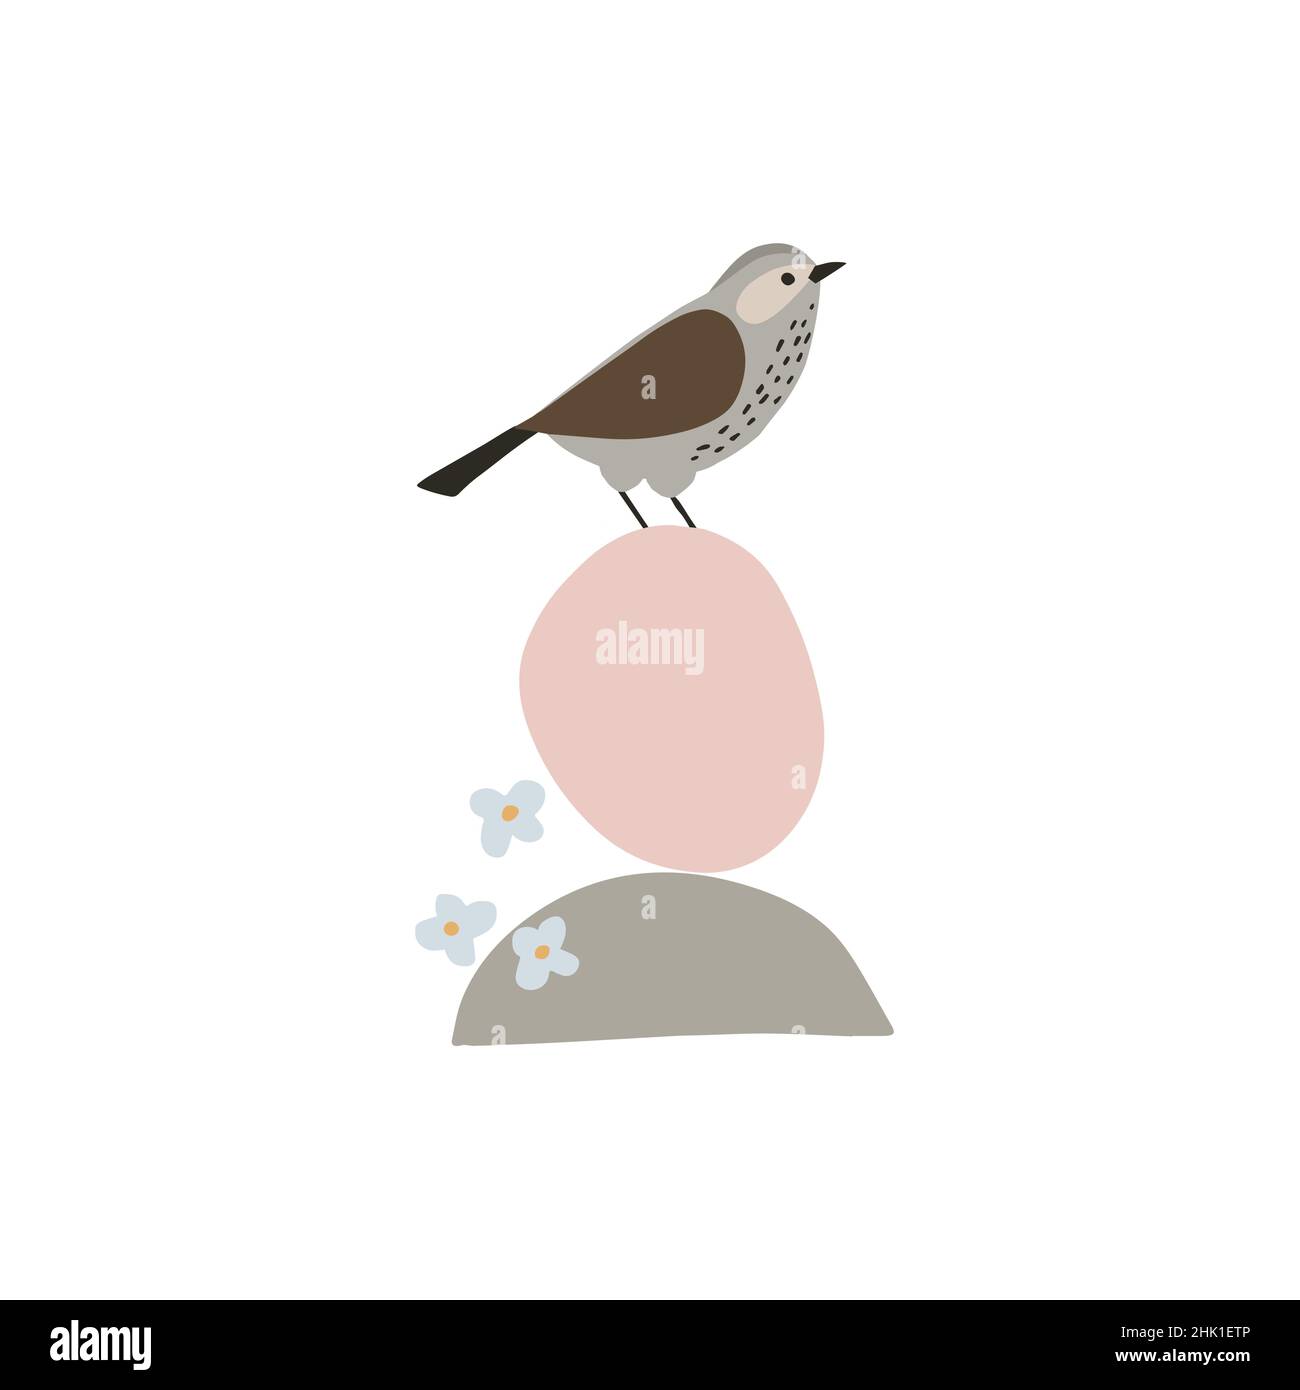 Biglietto d'auguri artistico di primavera, invito. Uccello seduto su forme geometriche organiche astratte. Fiori blu, fiori isolati su sfondo bianco Illustrazione Vettoriale